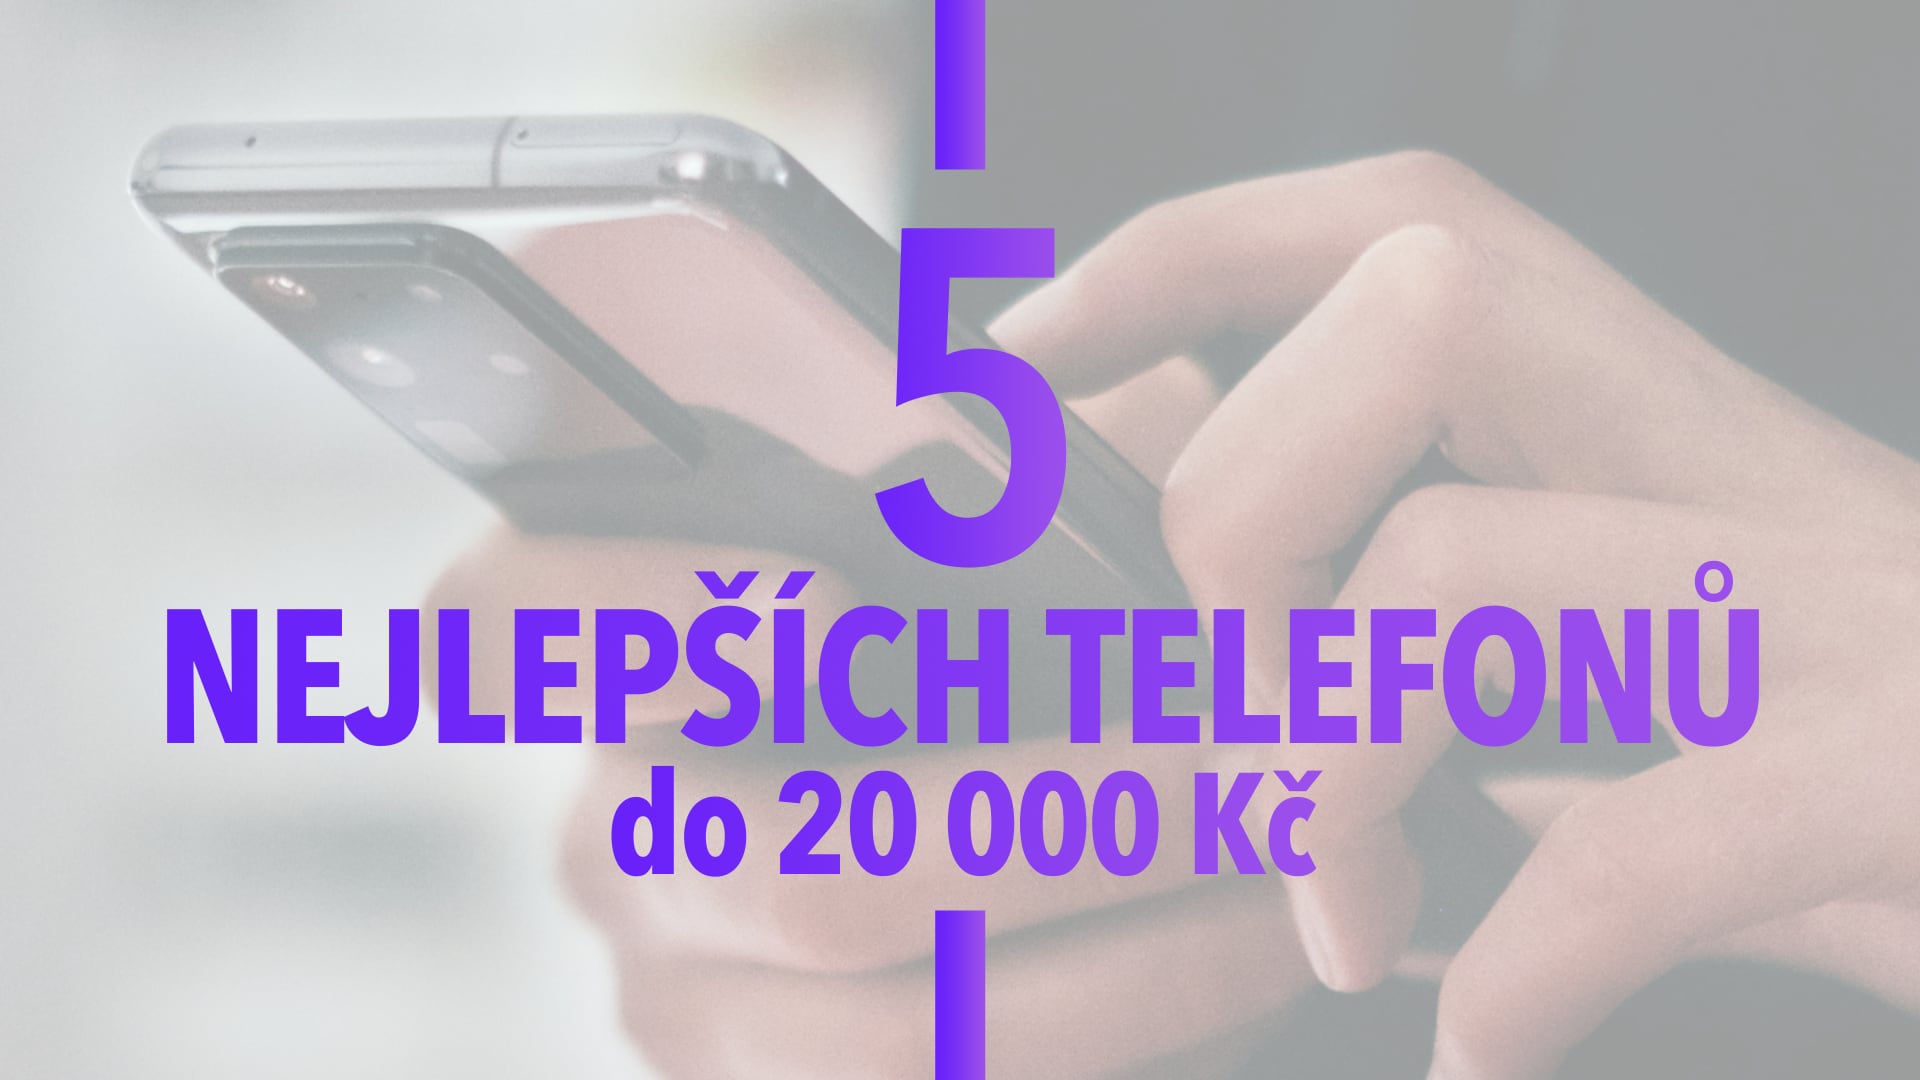 Vybrali jsme 5 nejlepších mobilních telefonů do 20 000 Kč